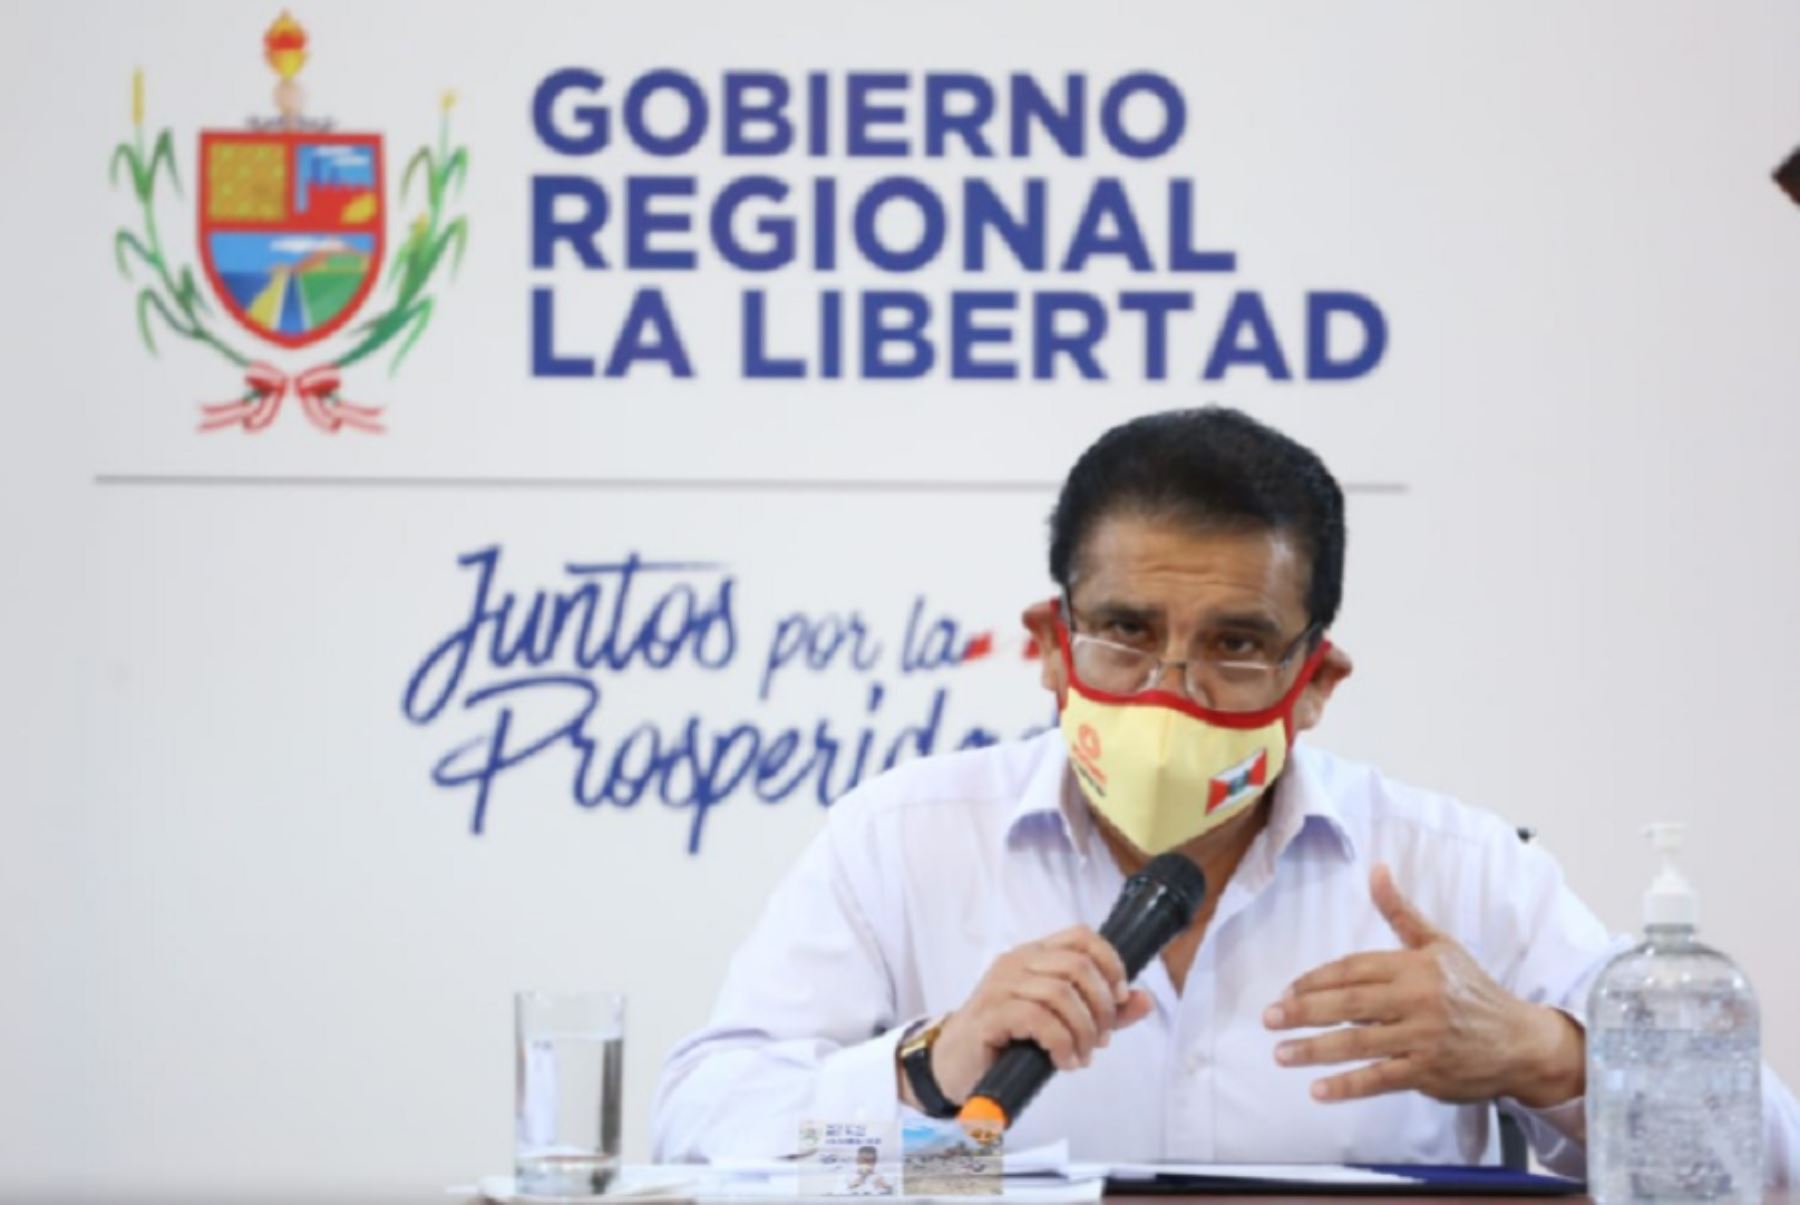 Gobernador regional de La Libertad, Manuel Llempén, saludó asunción de Francisco Sagasti como presidente de la República. ANDINA/Difusión